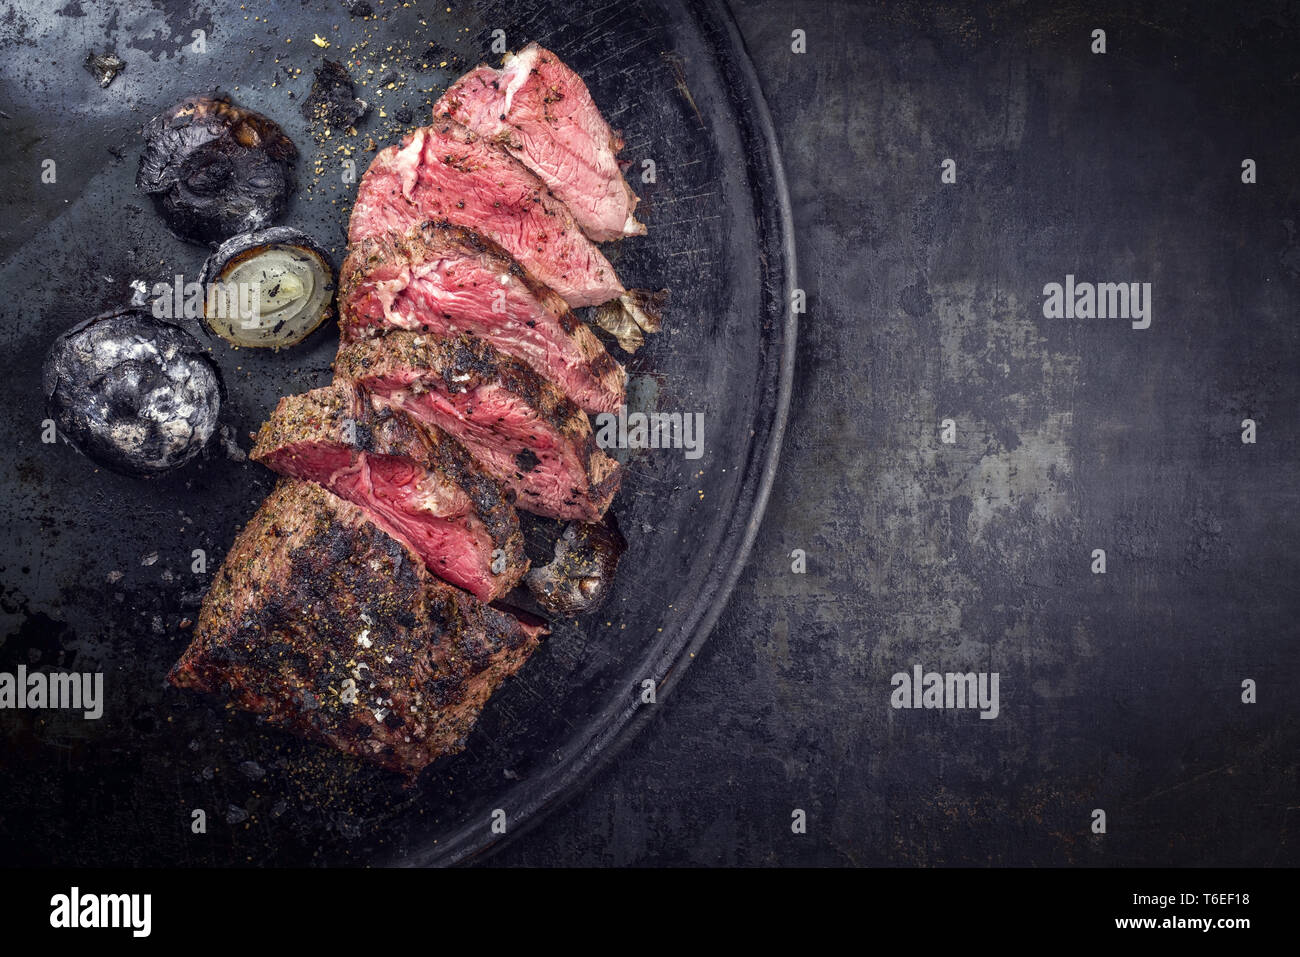 Sec Barbecue de caveman chateaubriand steak wagyu avec oignons tranchés comme close-up sur une carte Banque D'Images